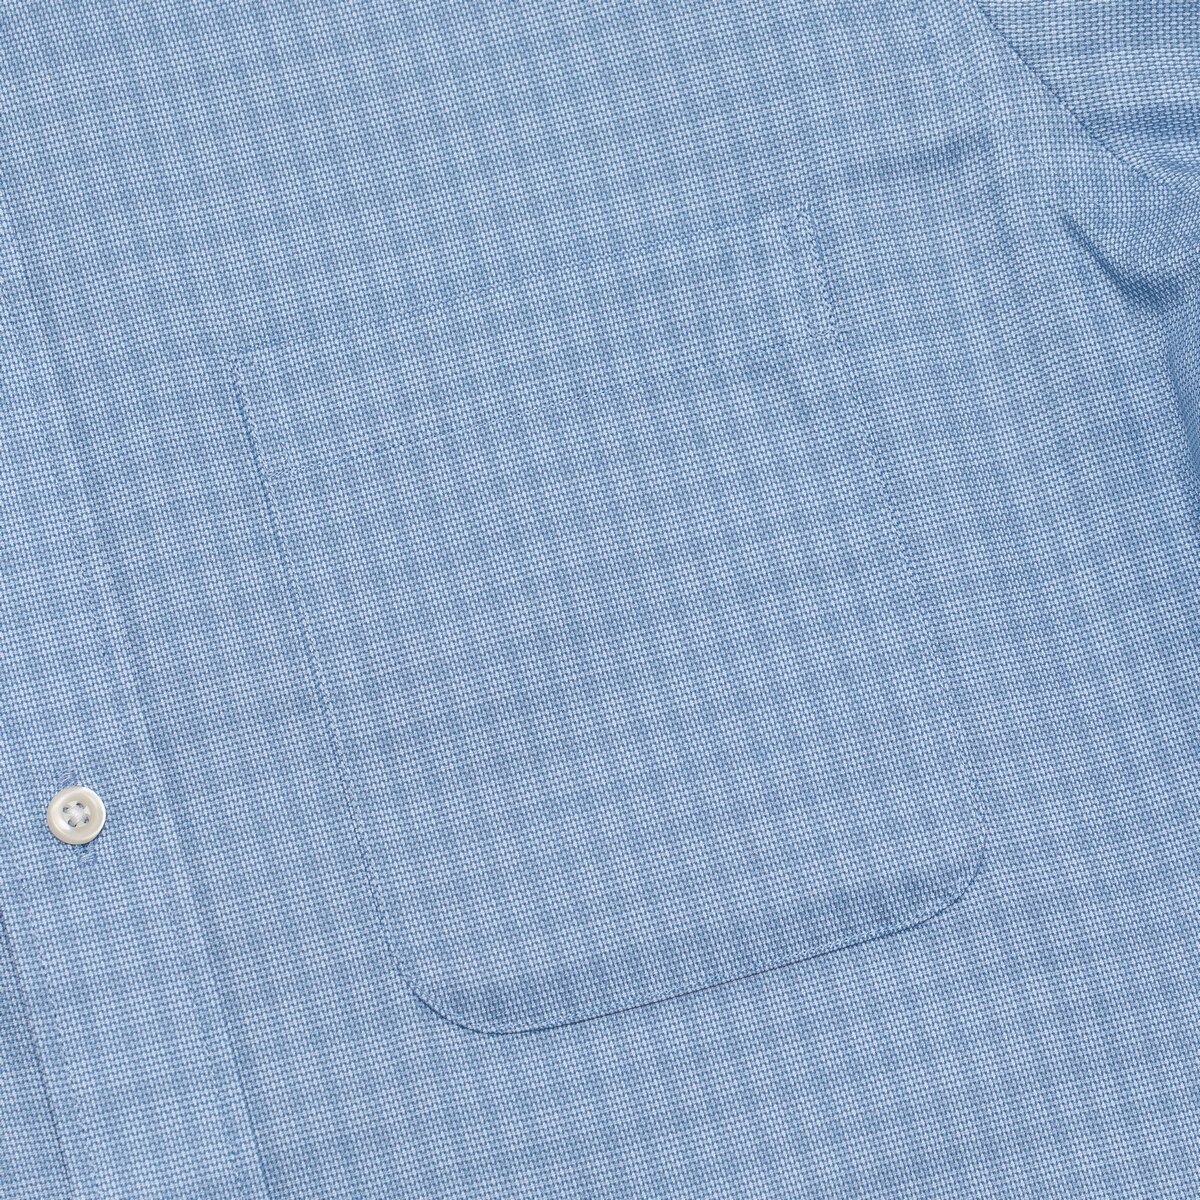 Kirkland Signature 科克蘭 男長袖鈕扣領印花襯衫 藍色格紋 領圍 16吋 X 袖長 34/35吋